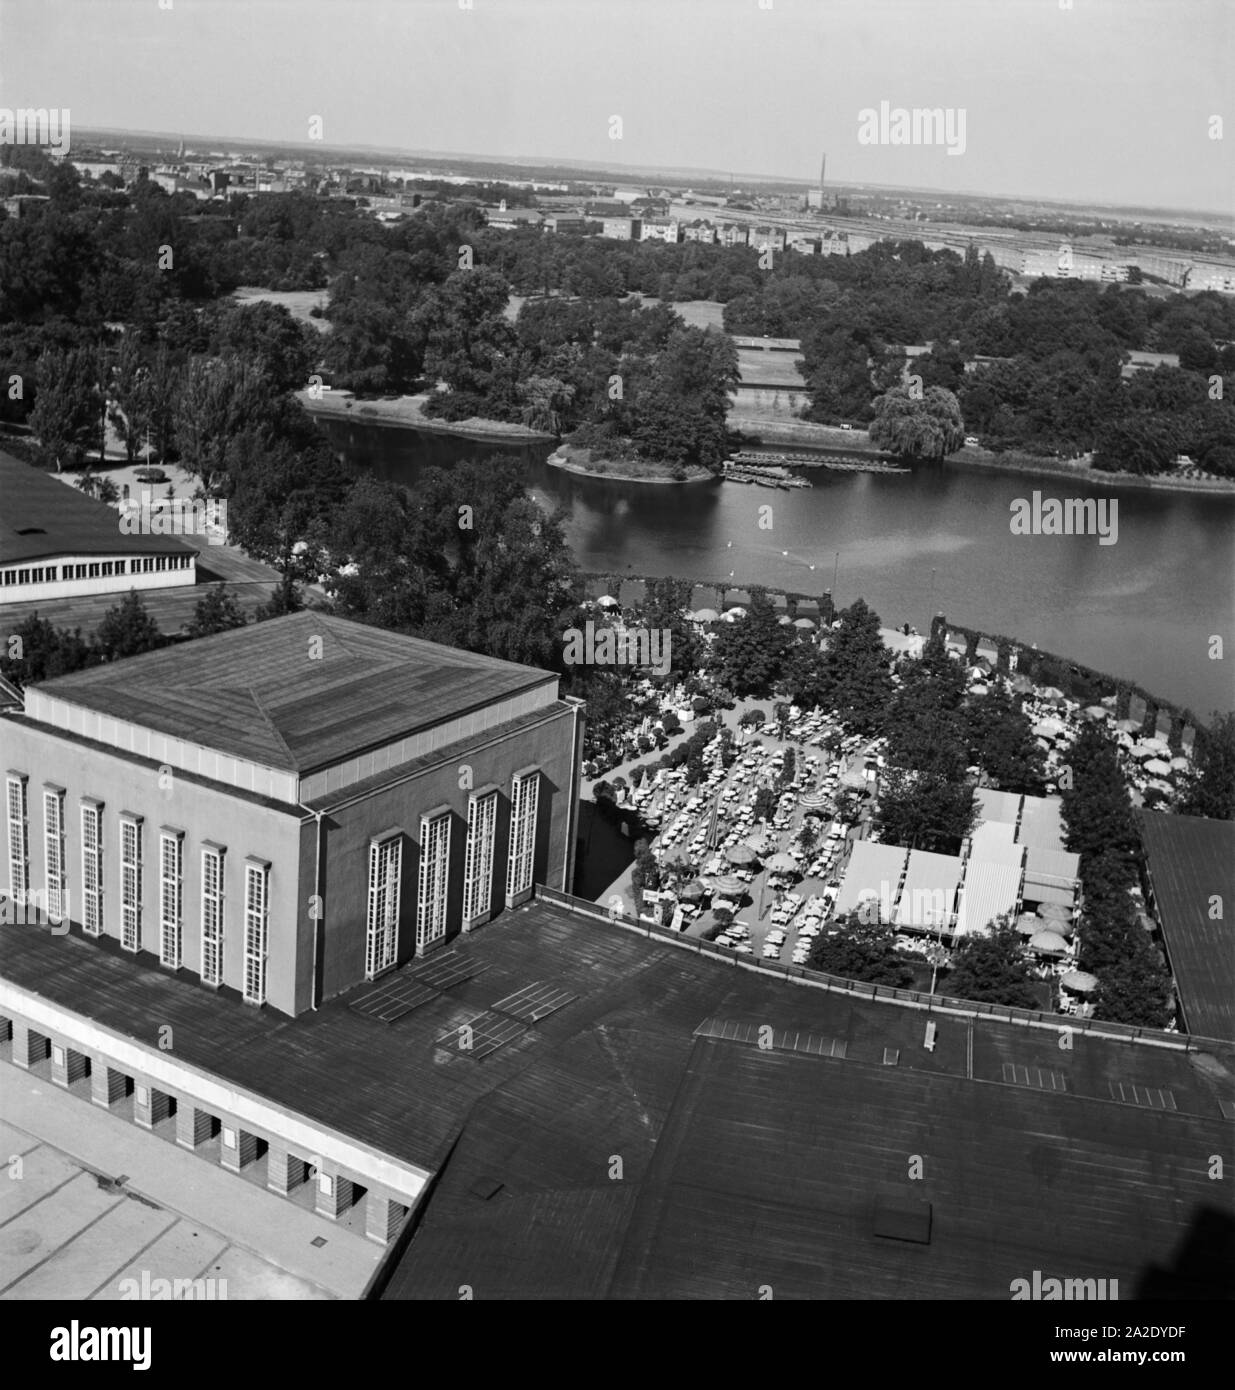 Luftbild der Ausstellungshallen am Mittag Adolf vedere a Magdeburgo, Deutschland 1930er Jahre. Vista aerea del sale di esposizione vicino l'artificiale Adolf Mittag lago a Magdeburgo, Germania 1930s. Foto Stock